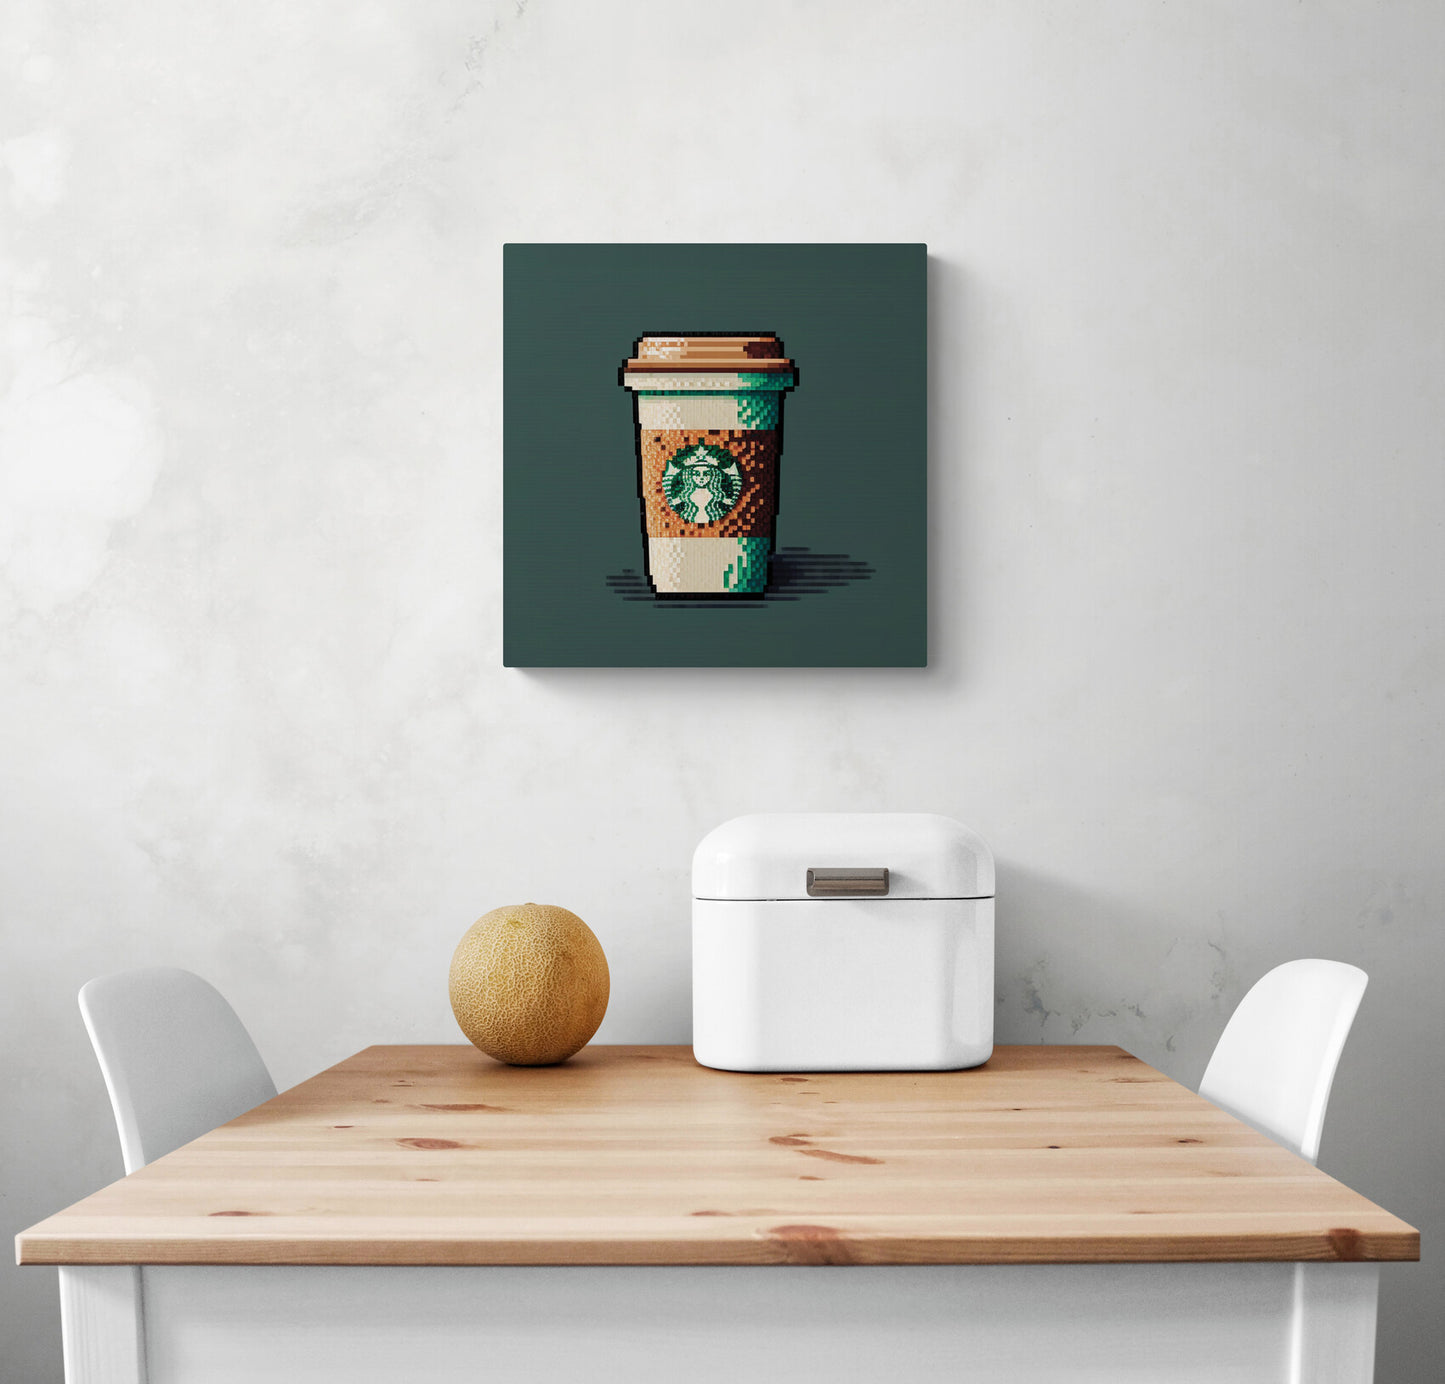 un tableau cuisine de petite taille d’une tasse de café Starbucks en pixel art, avec des couleurs marron et vert contrastantes pour une esthétique raffinée et confortable. Beau décor mural qui semble cosi chaleureux